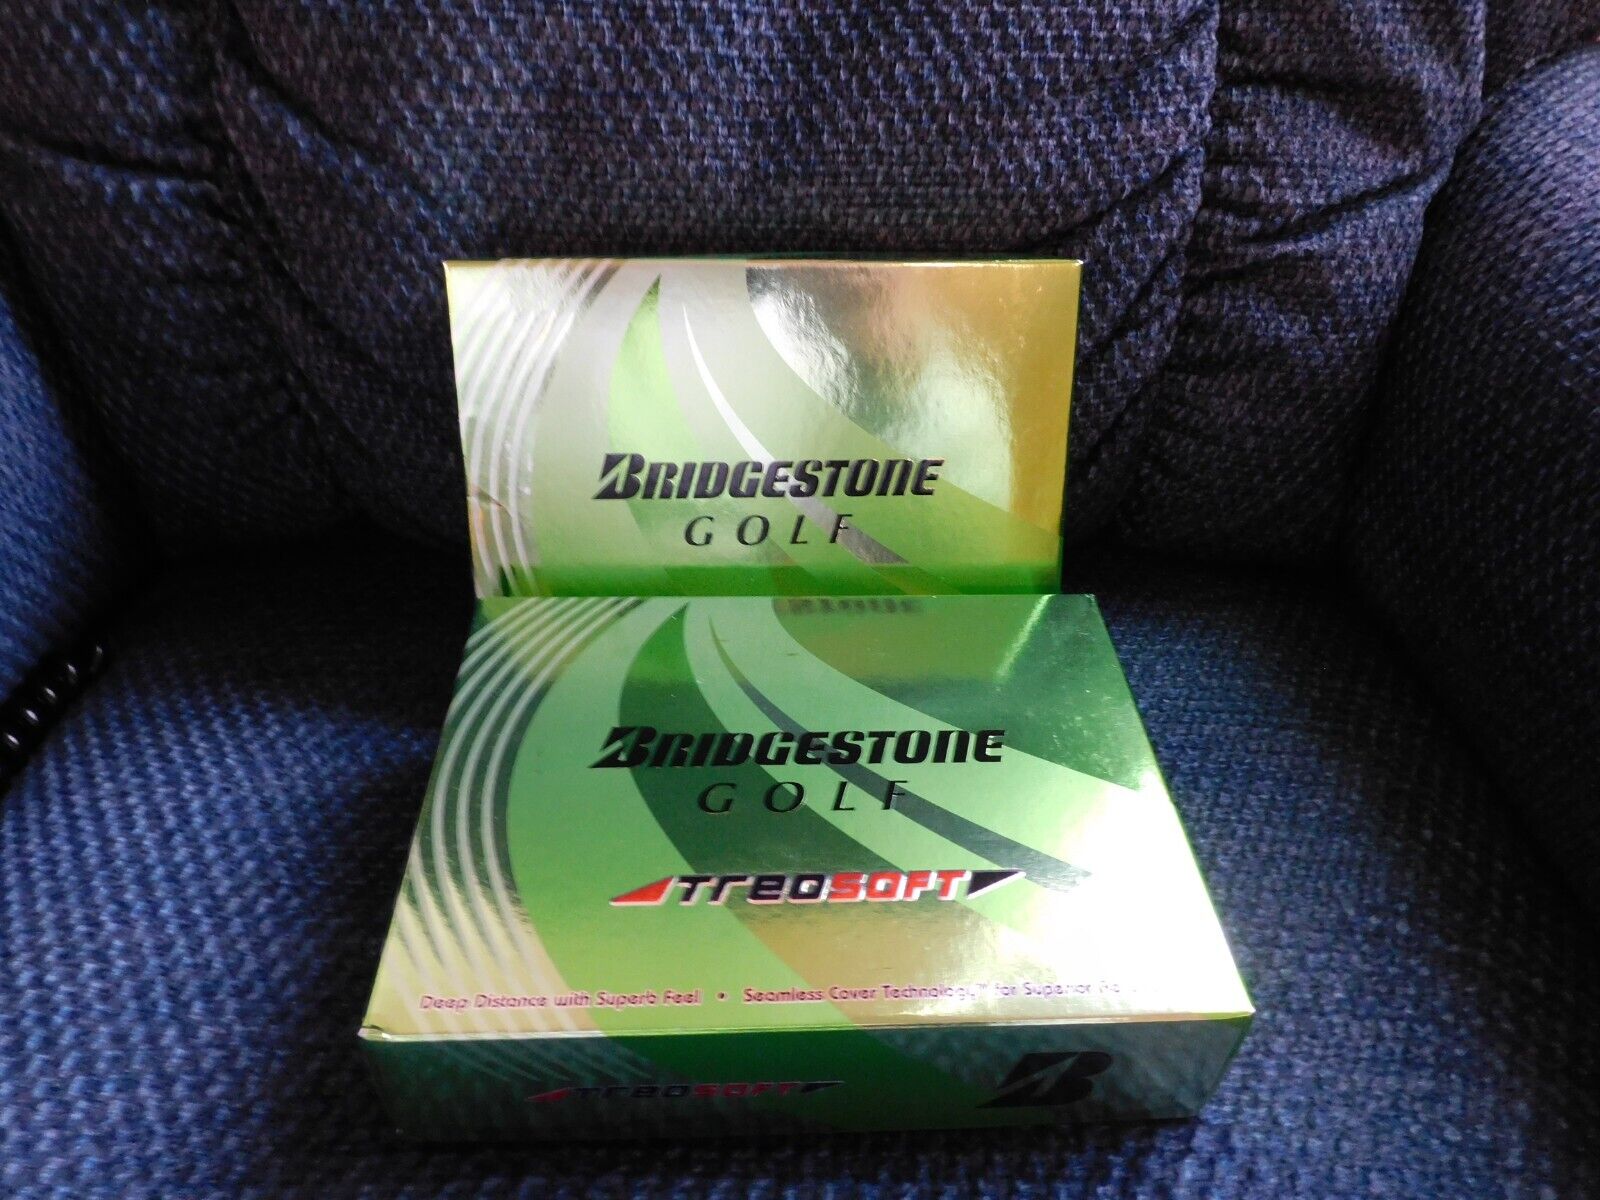 Bridgestone TREO SOFT golf balls, 2 dozen